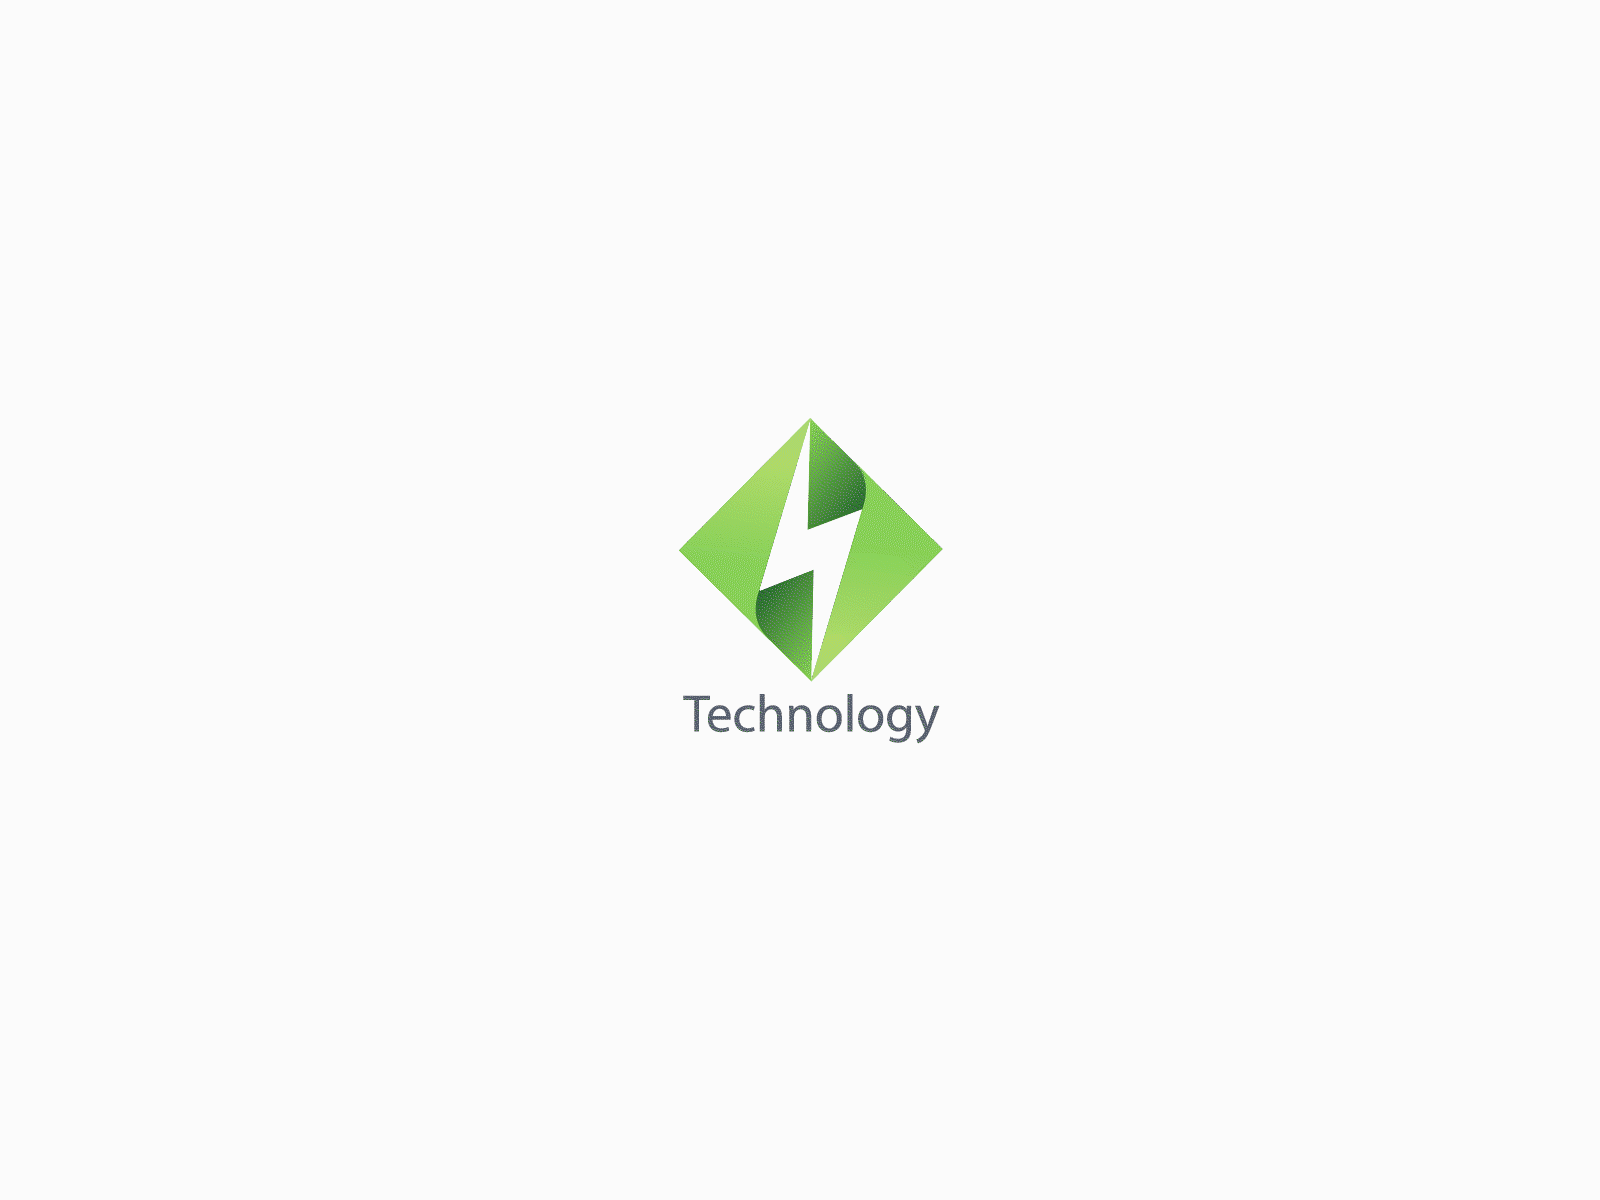 Technology logo animation